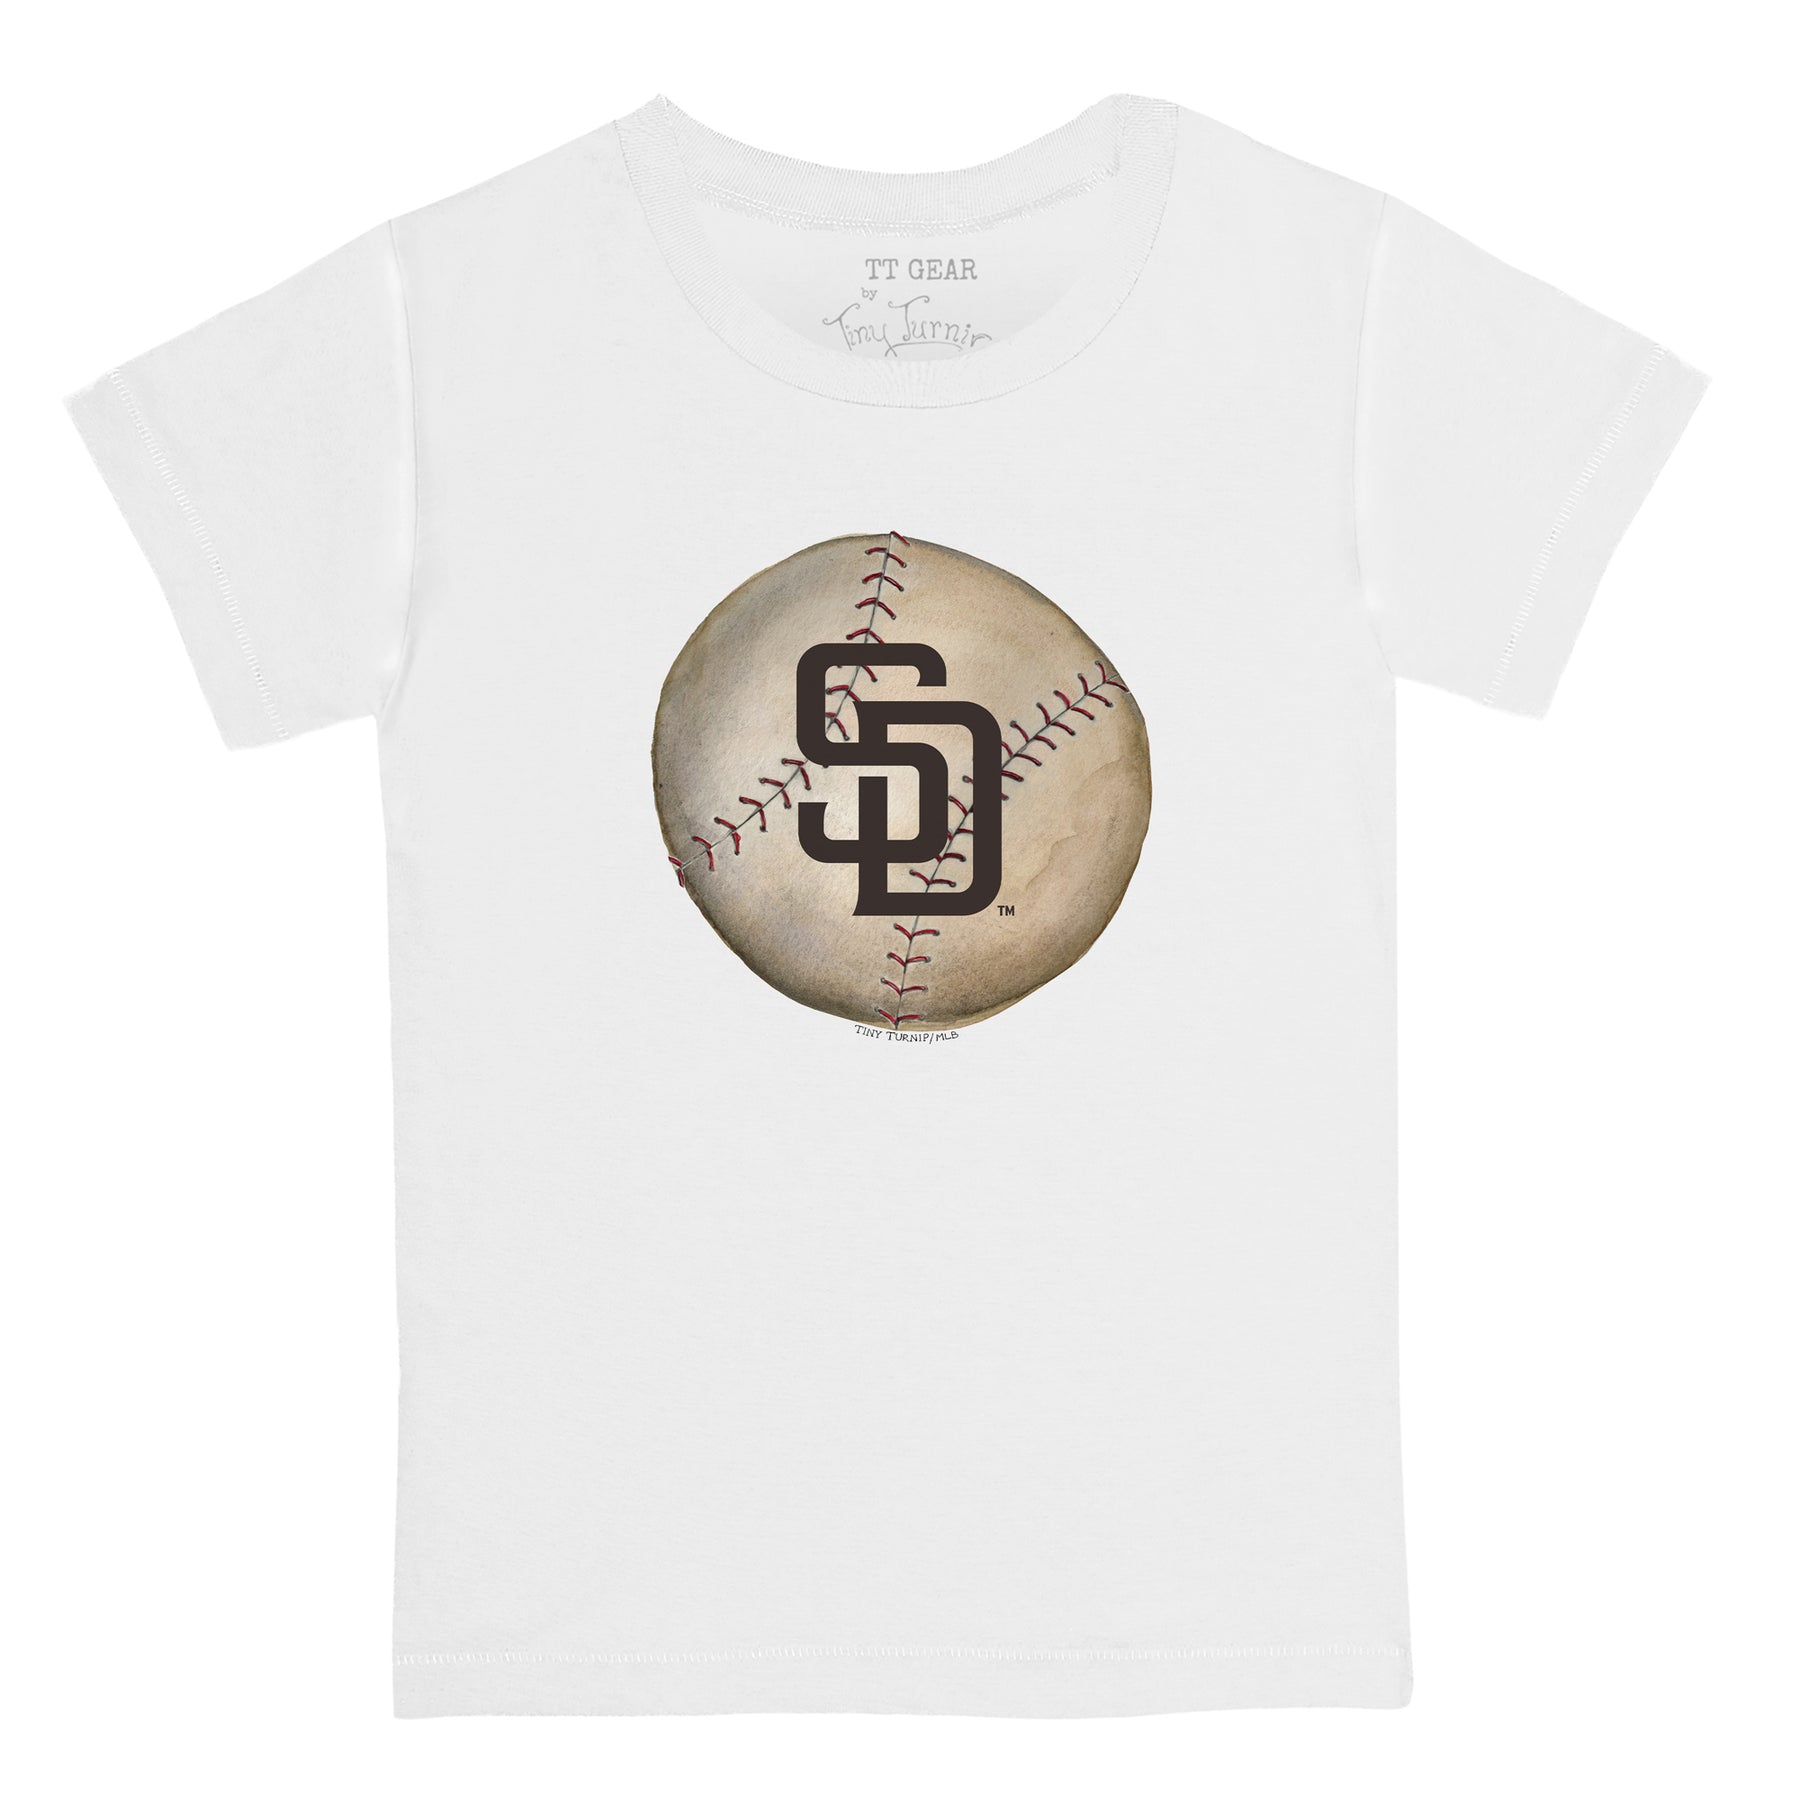 Toddler Tiny Turnip White Houston Astros Baseball Bow T-Shirt Size:3T